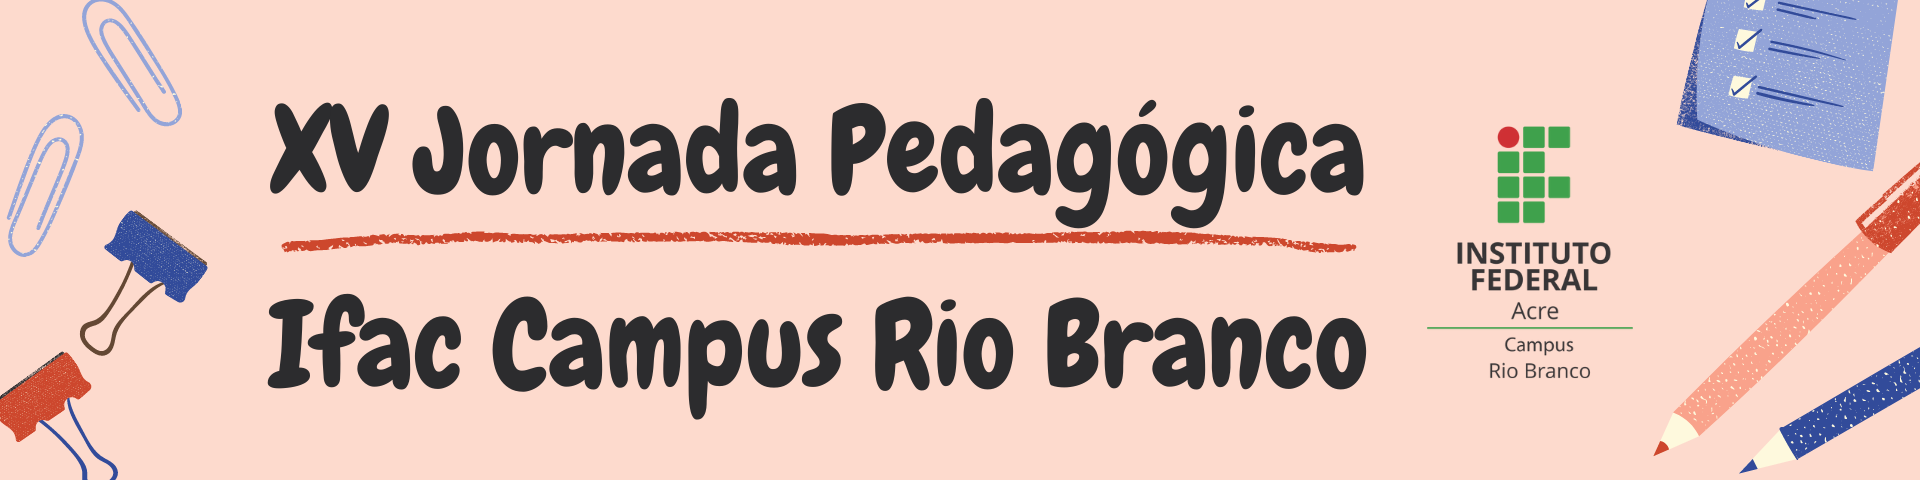 banner do XV Jornada Pedagógica do Ifac Campus Rio Branco (2022.1)